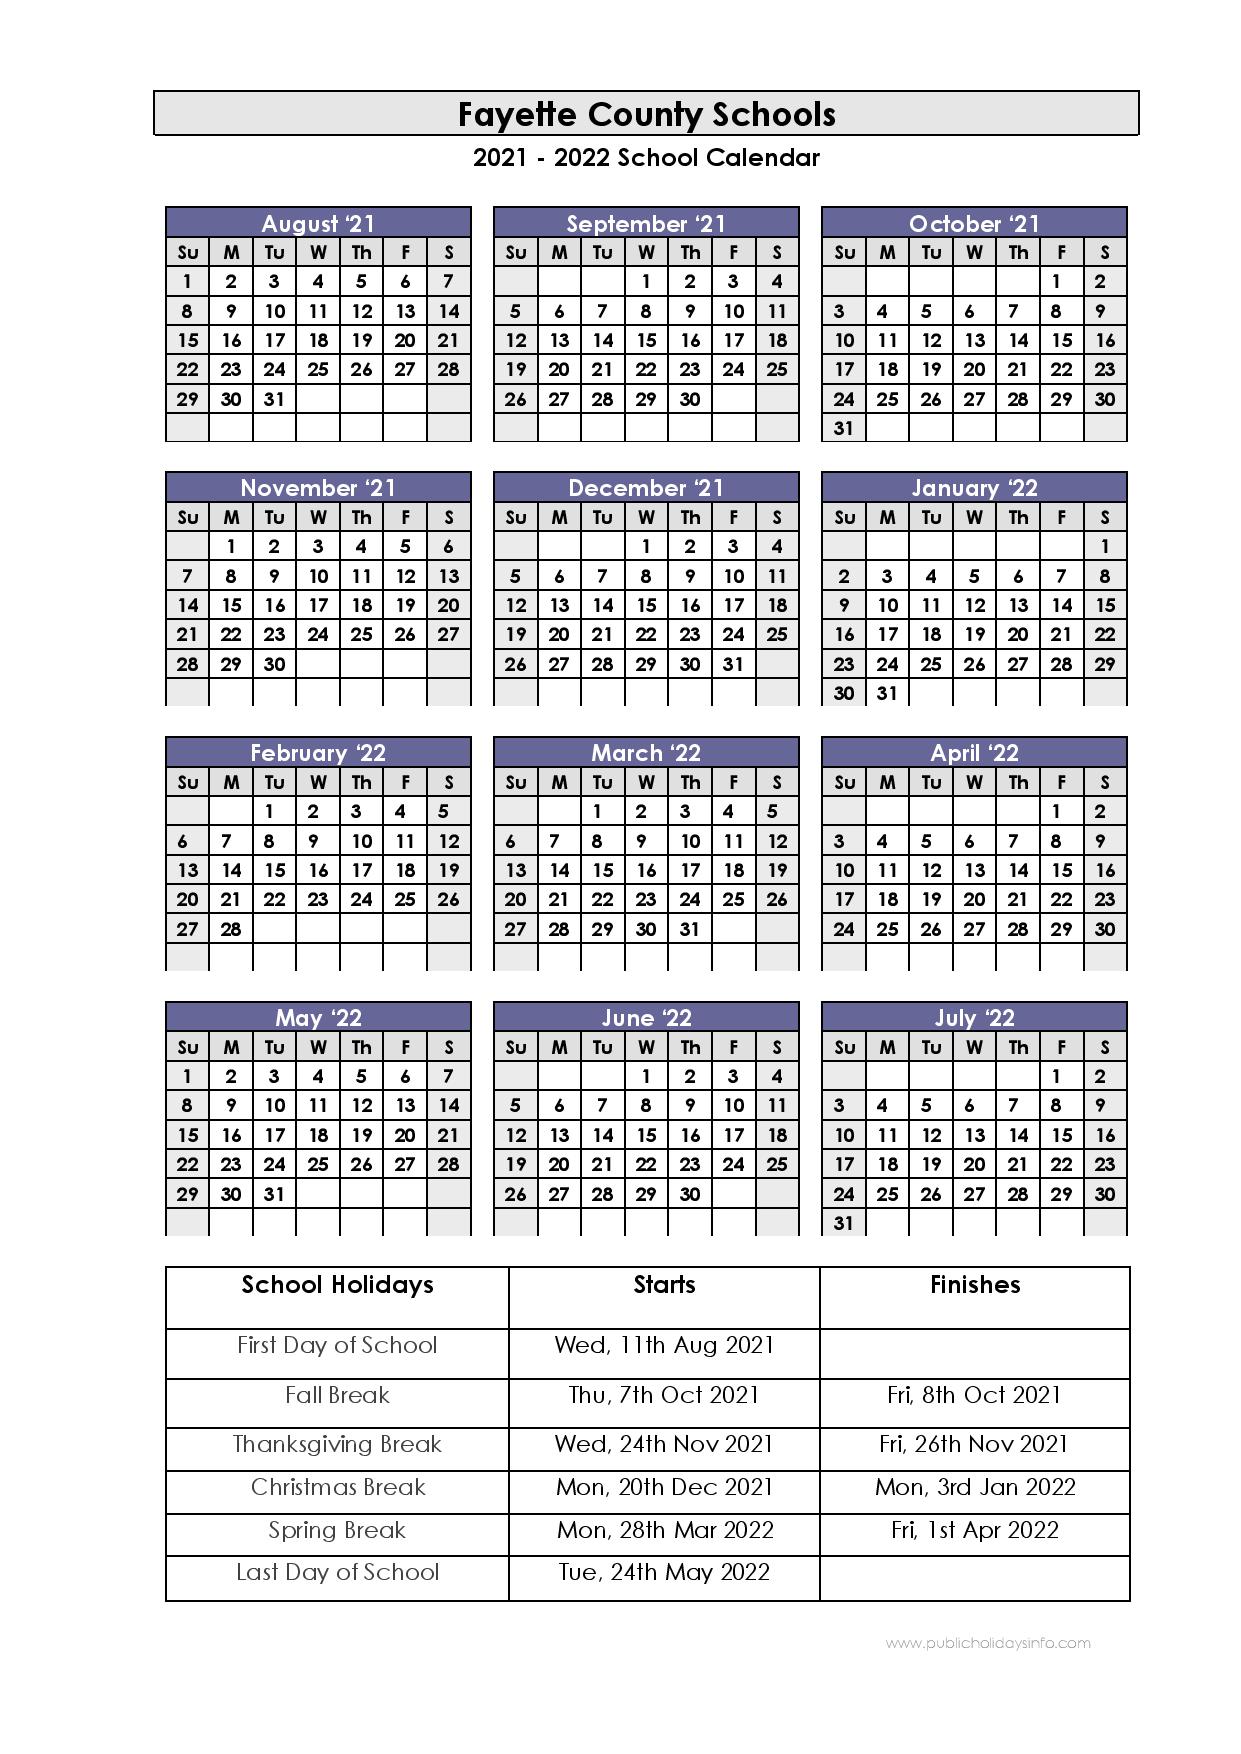 Fcps Calendar 2022 23 Fayette County Schools Calendar 2021-2022 (Kentucky)